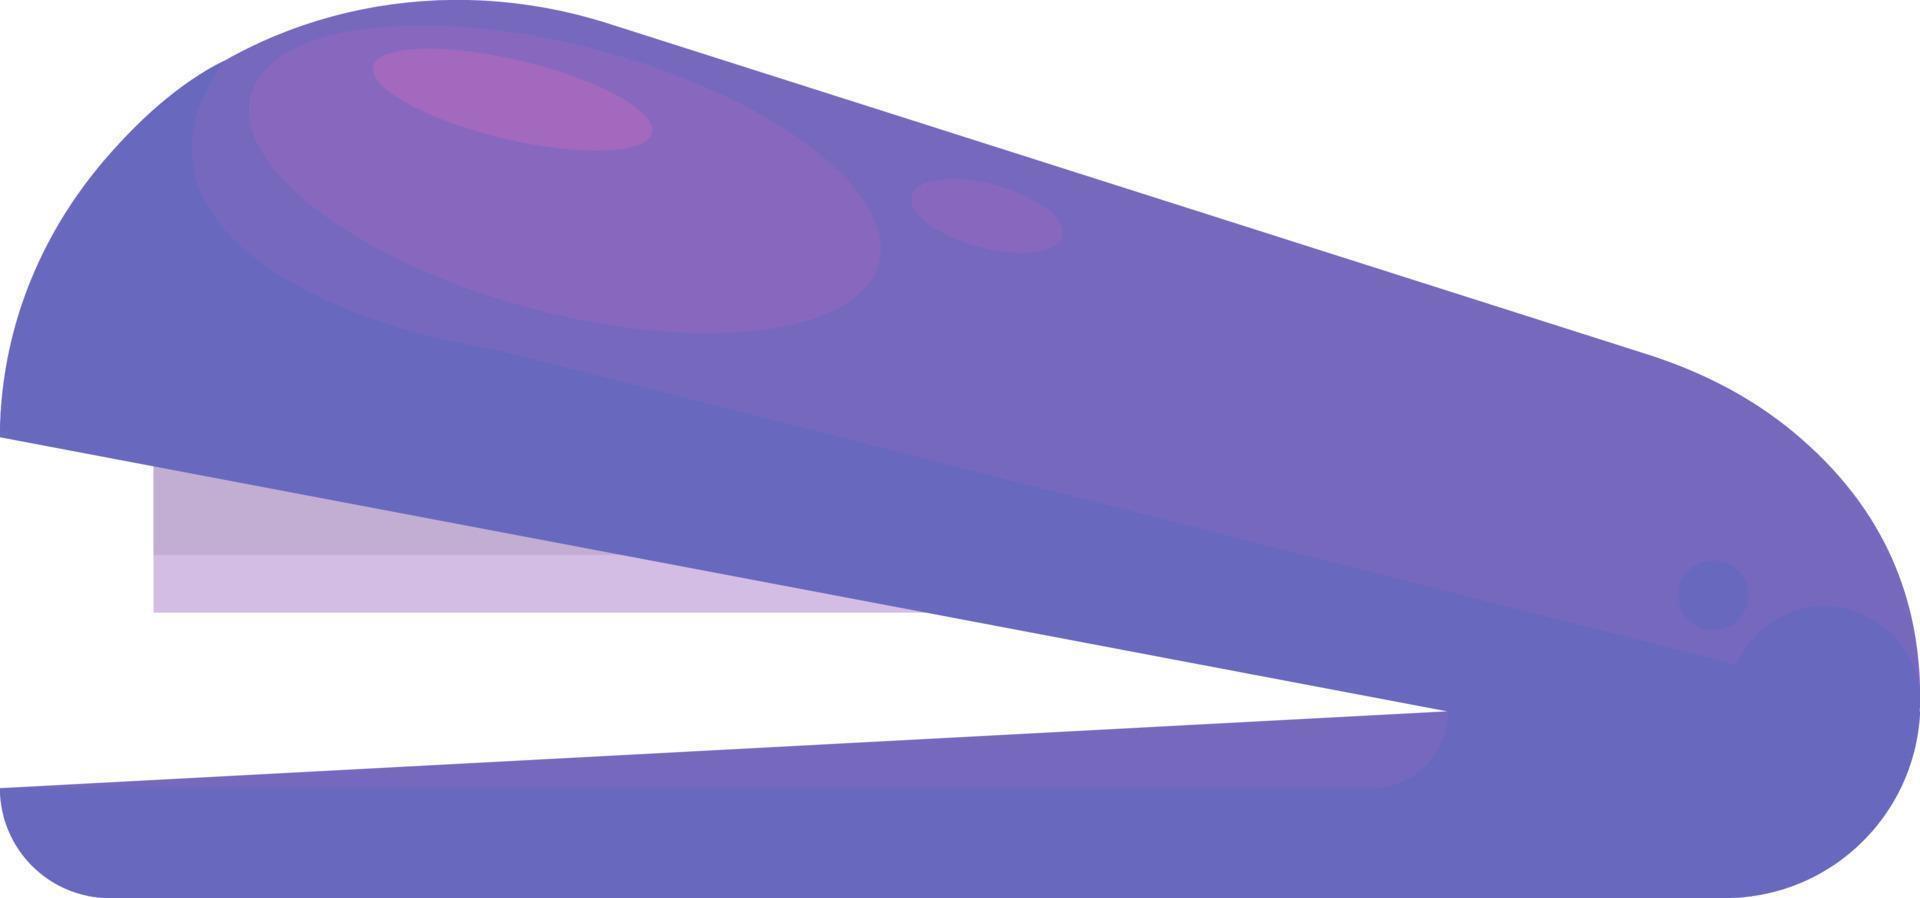 Agrafeuse violette, illustration, vecteur sur fond blanc